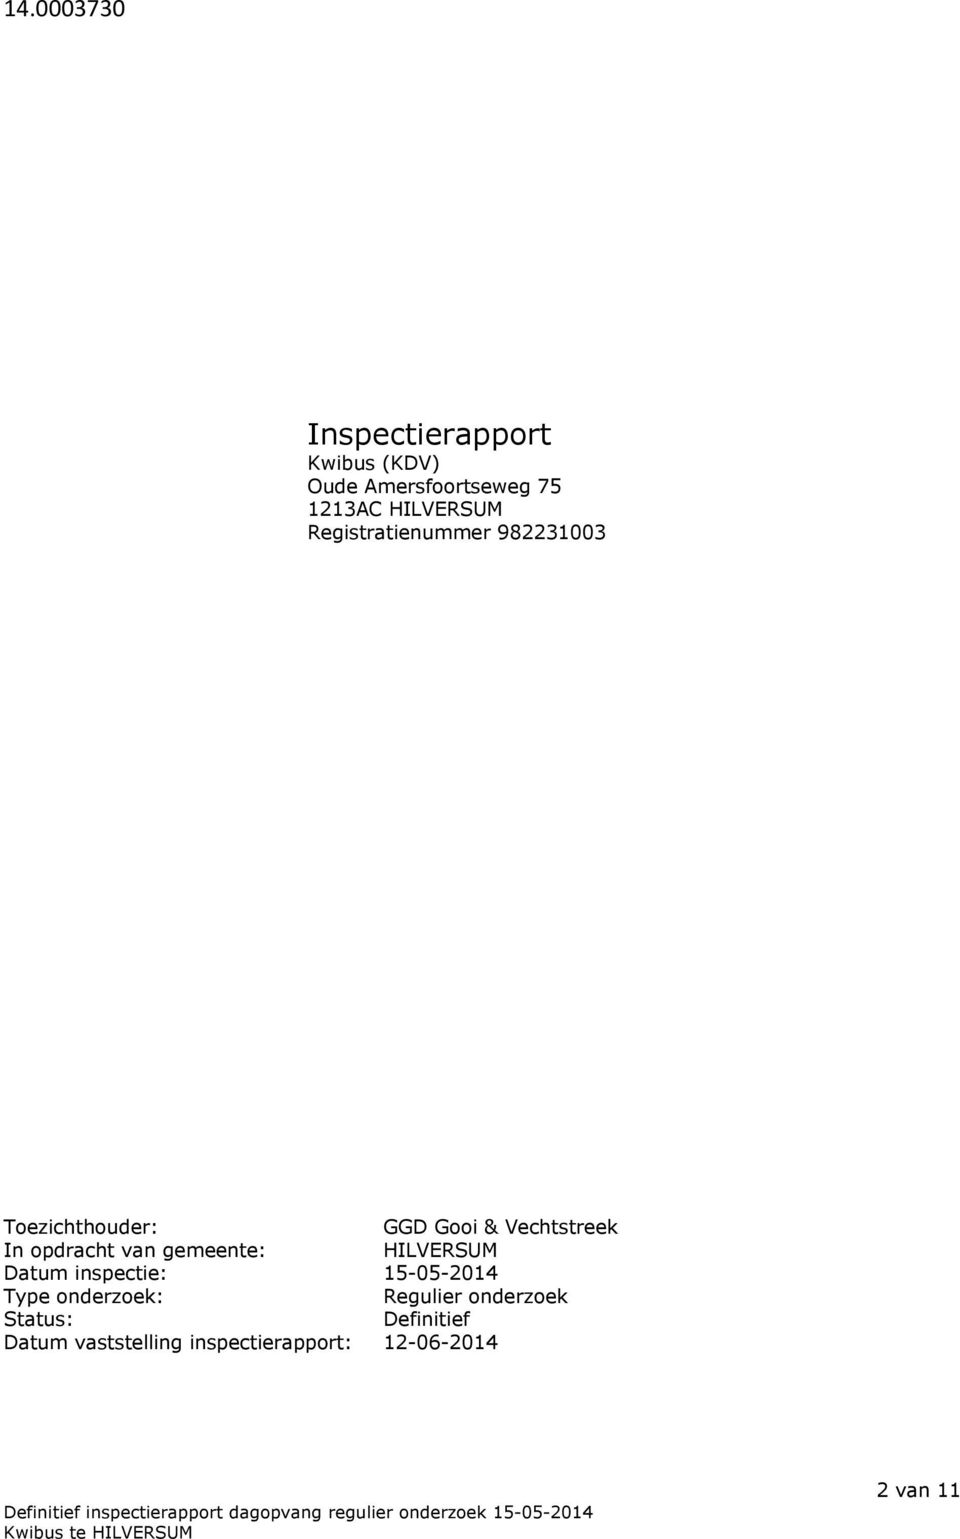 opdracht van gemeente: HILVERSUM Datum inspectie: 15-05-2014 Type onderzoek: